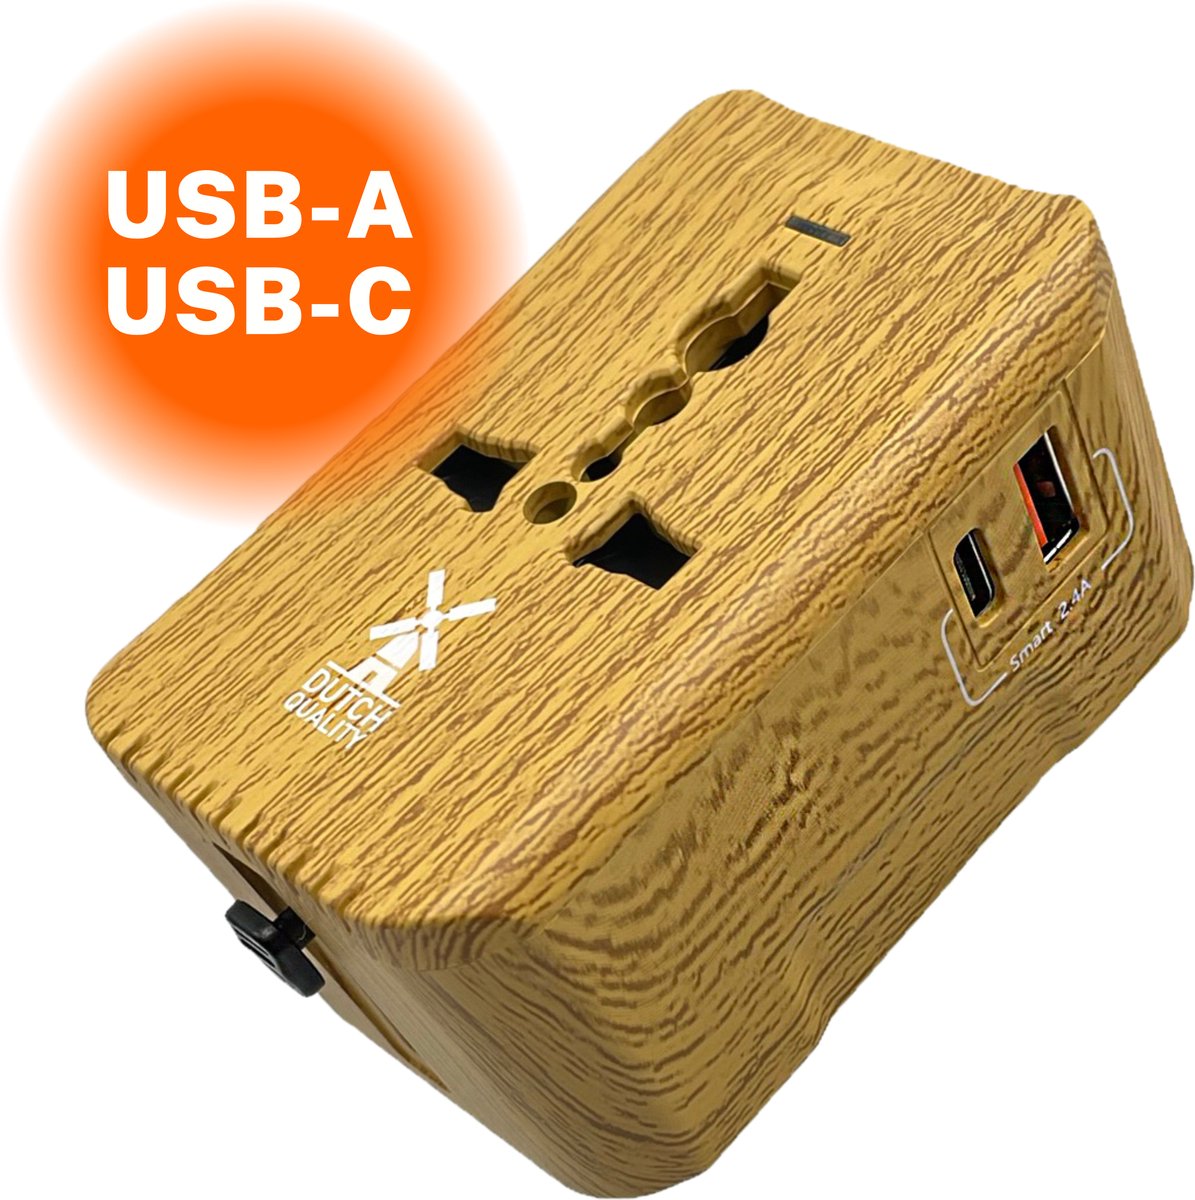 Dutch Quality® Universele Wereldstekker Hout Look - Reisstekker geschikt voor 170+ Landen - Met USB-C & USB-A Poorten - Internationale Reisadapter - Dutch Quality